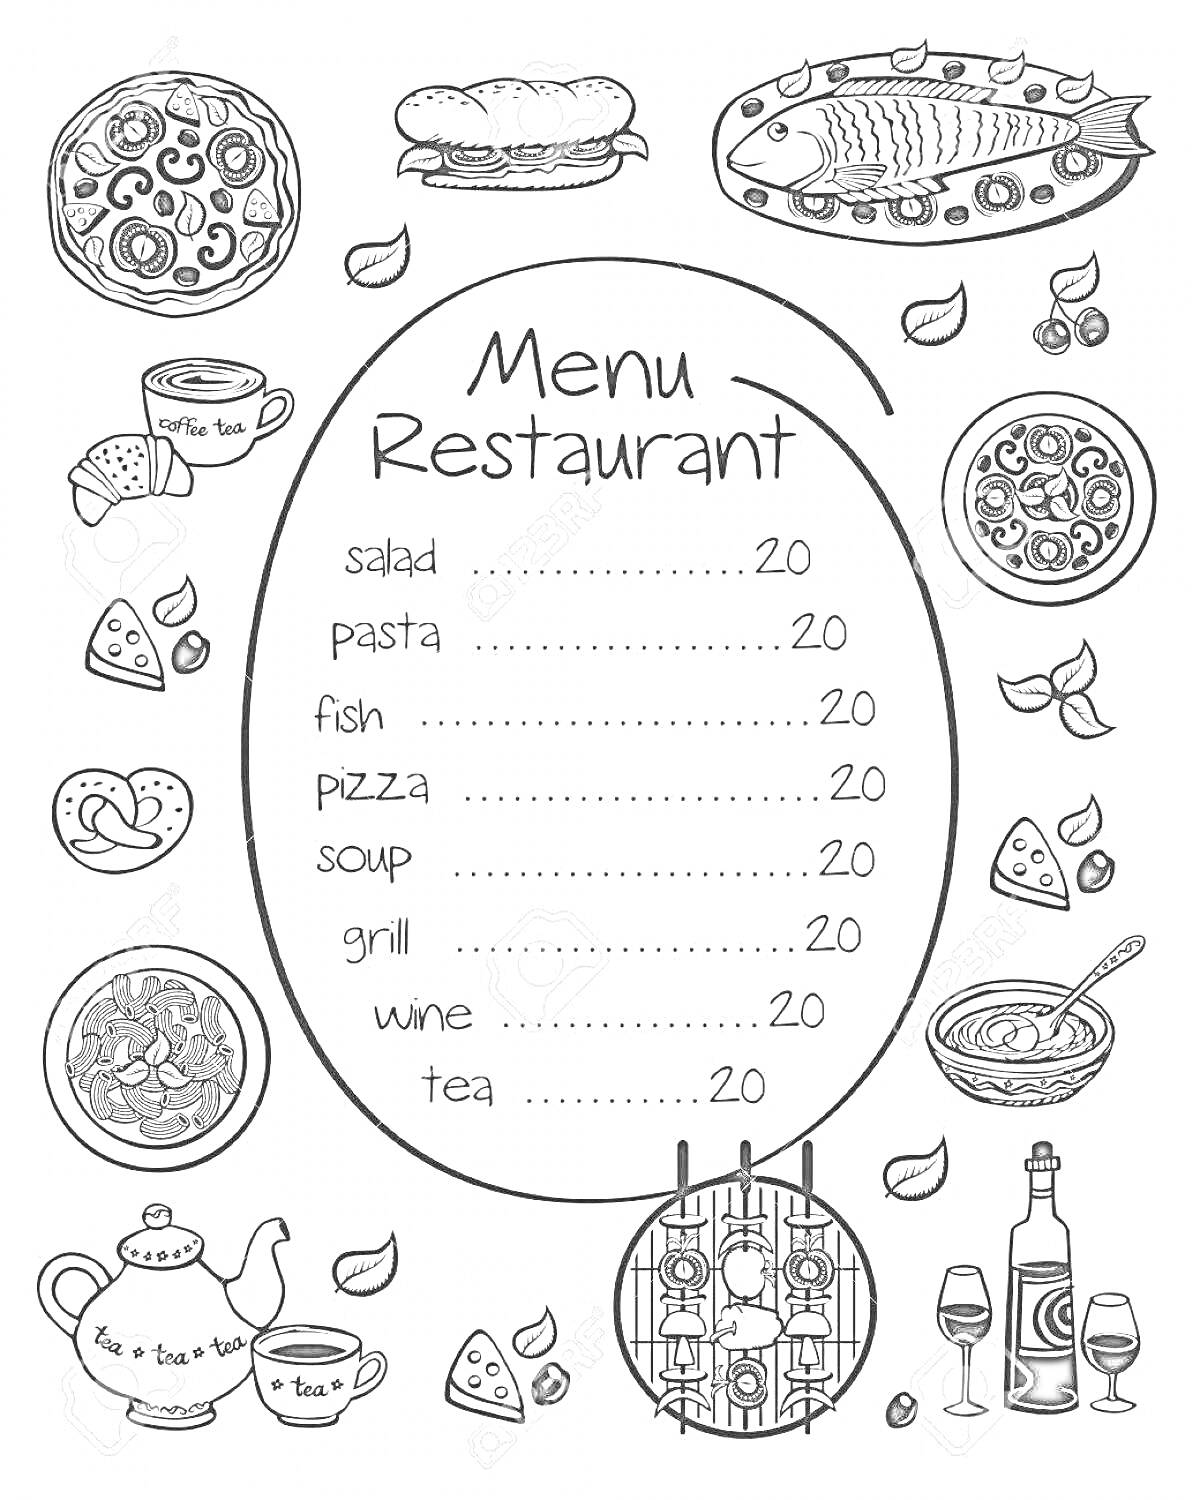 Меню ресторана с рисунками салата, пасты, рыбы, пиццы, супа, гриля, вина, чая, чайника, кружки, тарелки, вилки, бокала, бутылок, сыра, хлеба, лимона и листьев